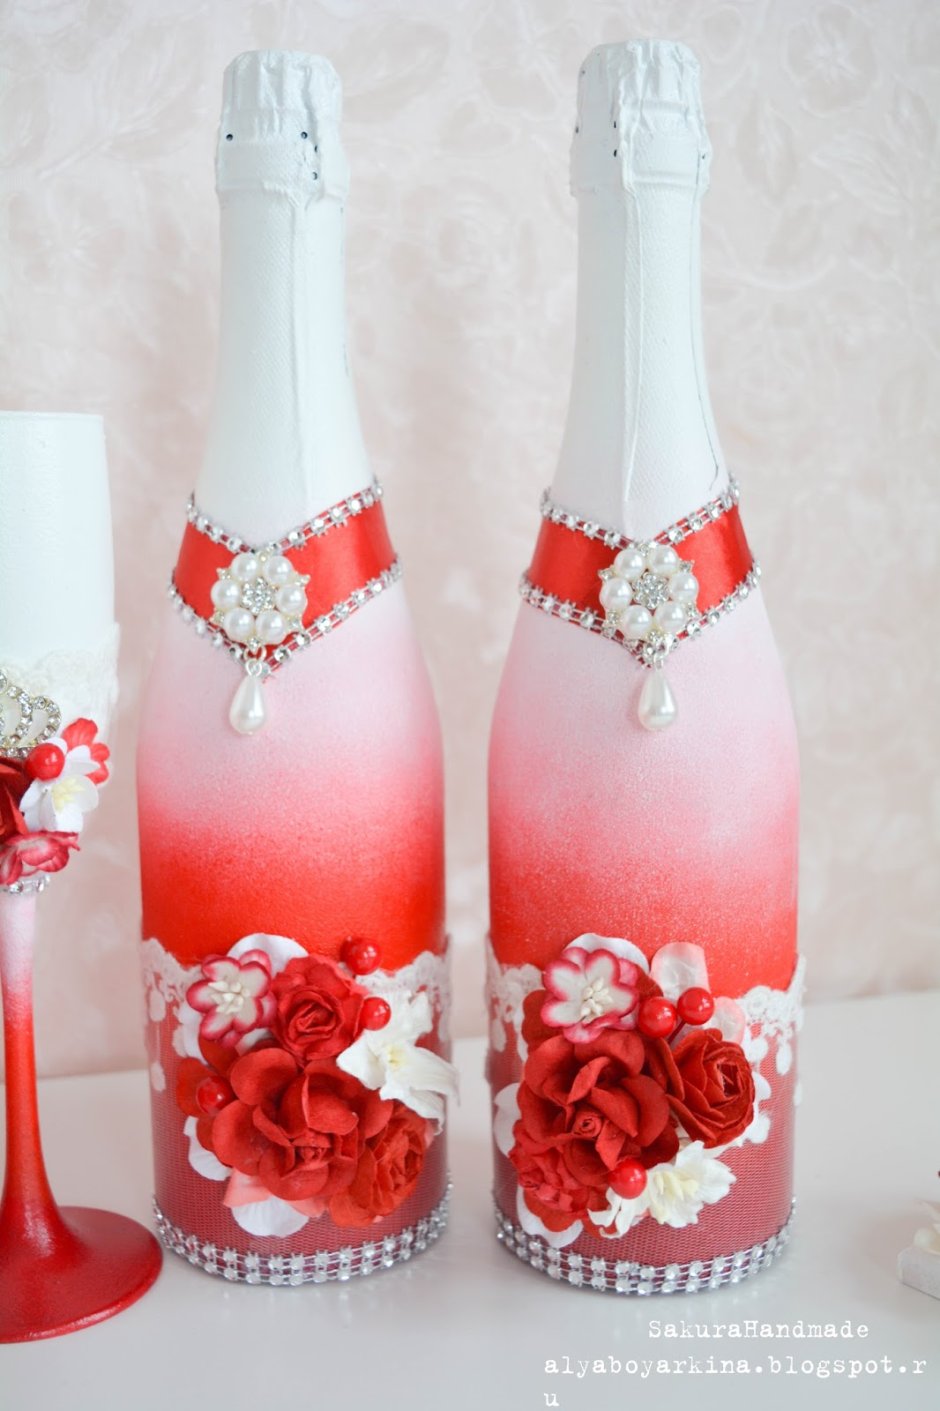 Бутылки на свадьбу красно белые